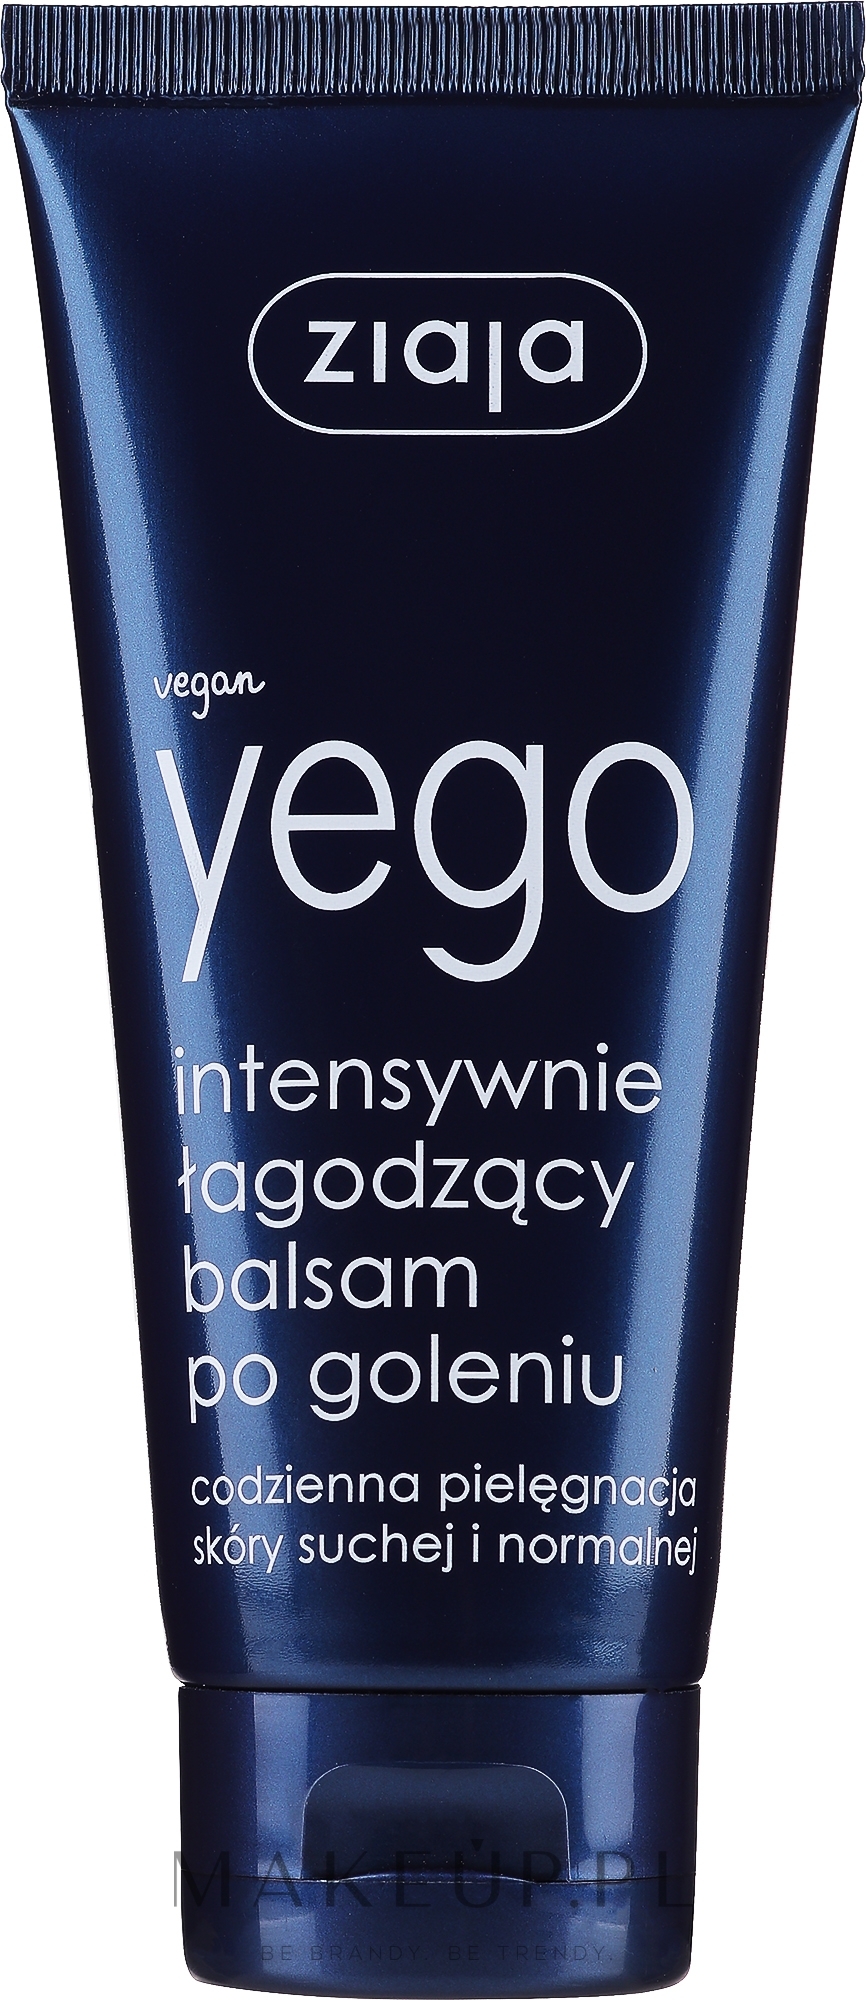 Intensywnie łagodzący balsam po goleniu - Ziaja Yego — Zdjęcie 75 ml